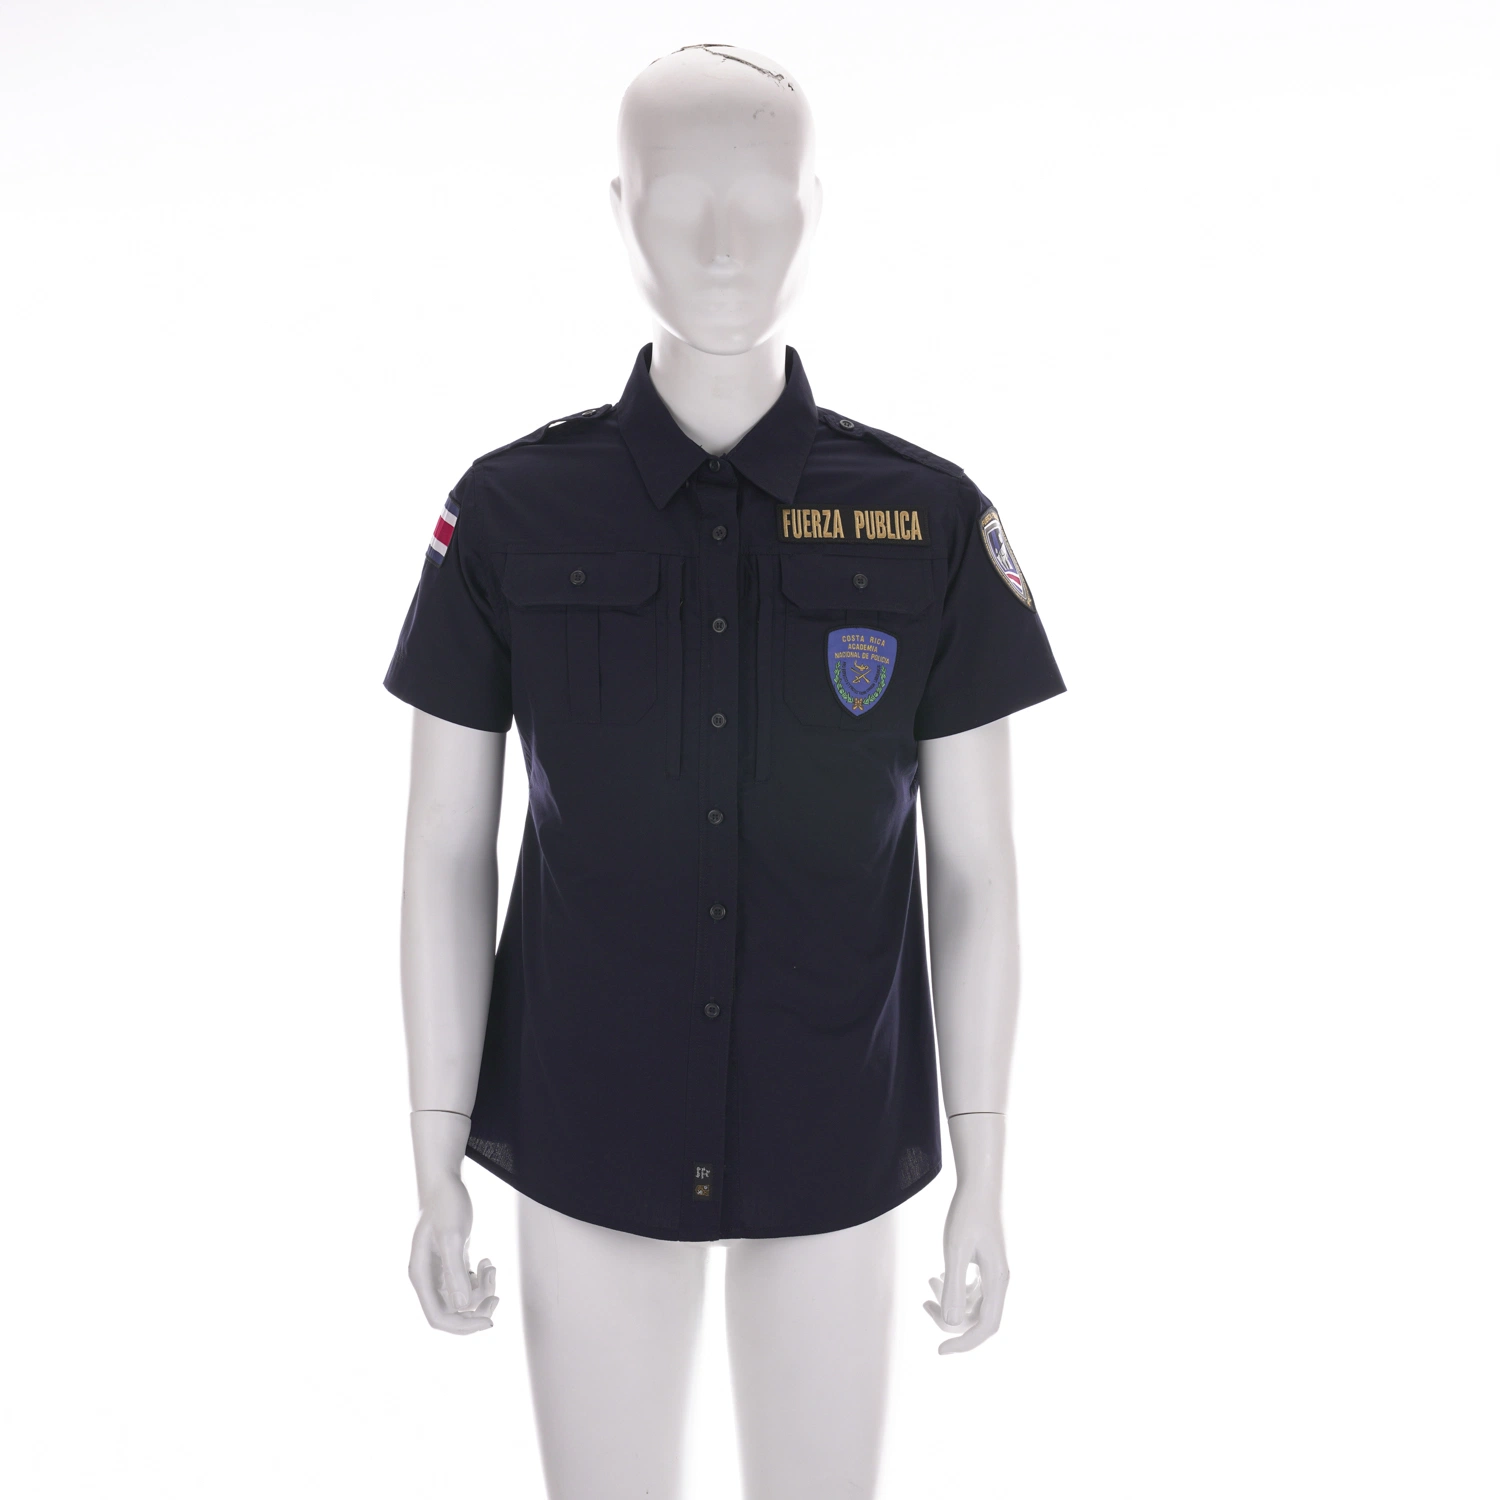 Unisex Workwear camisas uniformes